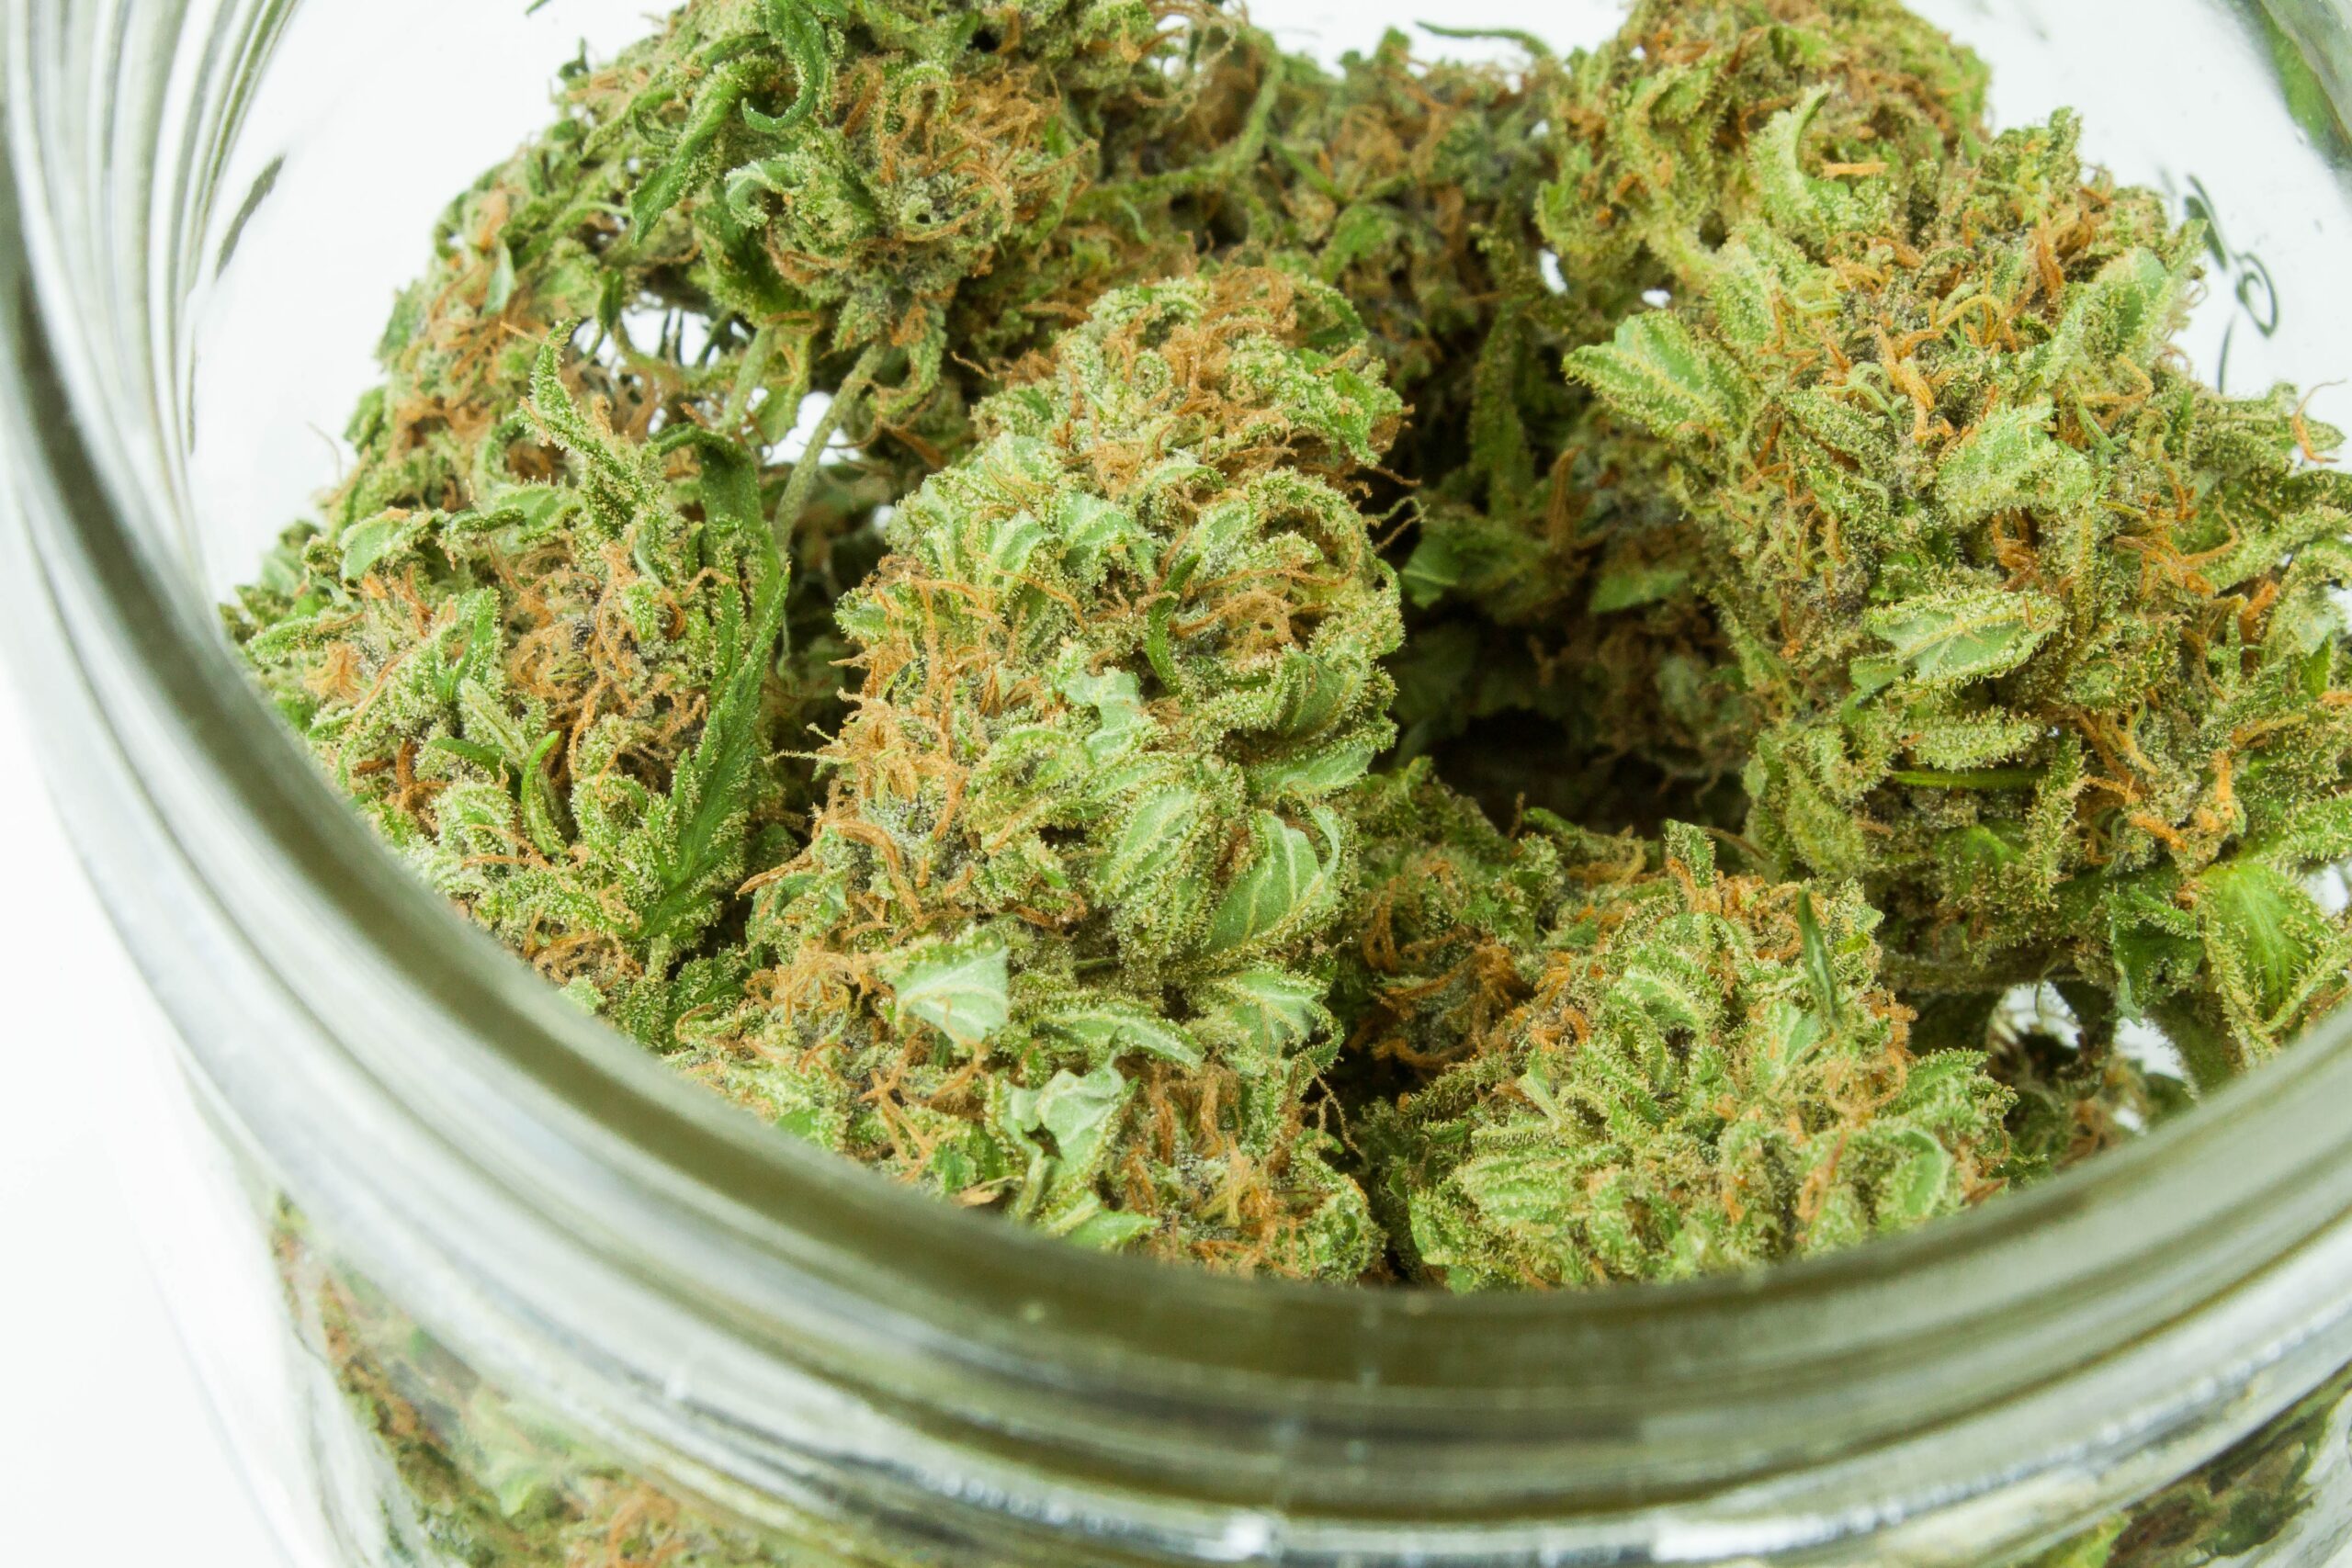 Connecticut Raises Cannabis Purchase Limit